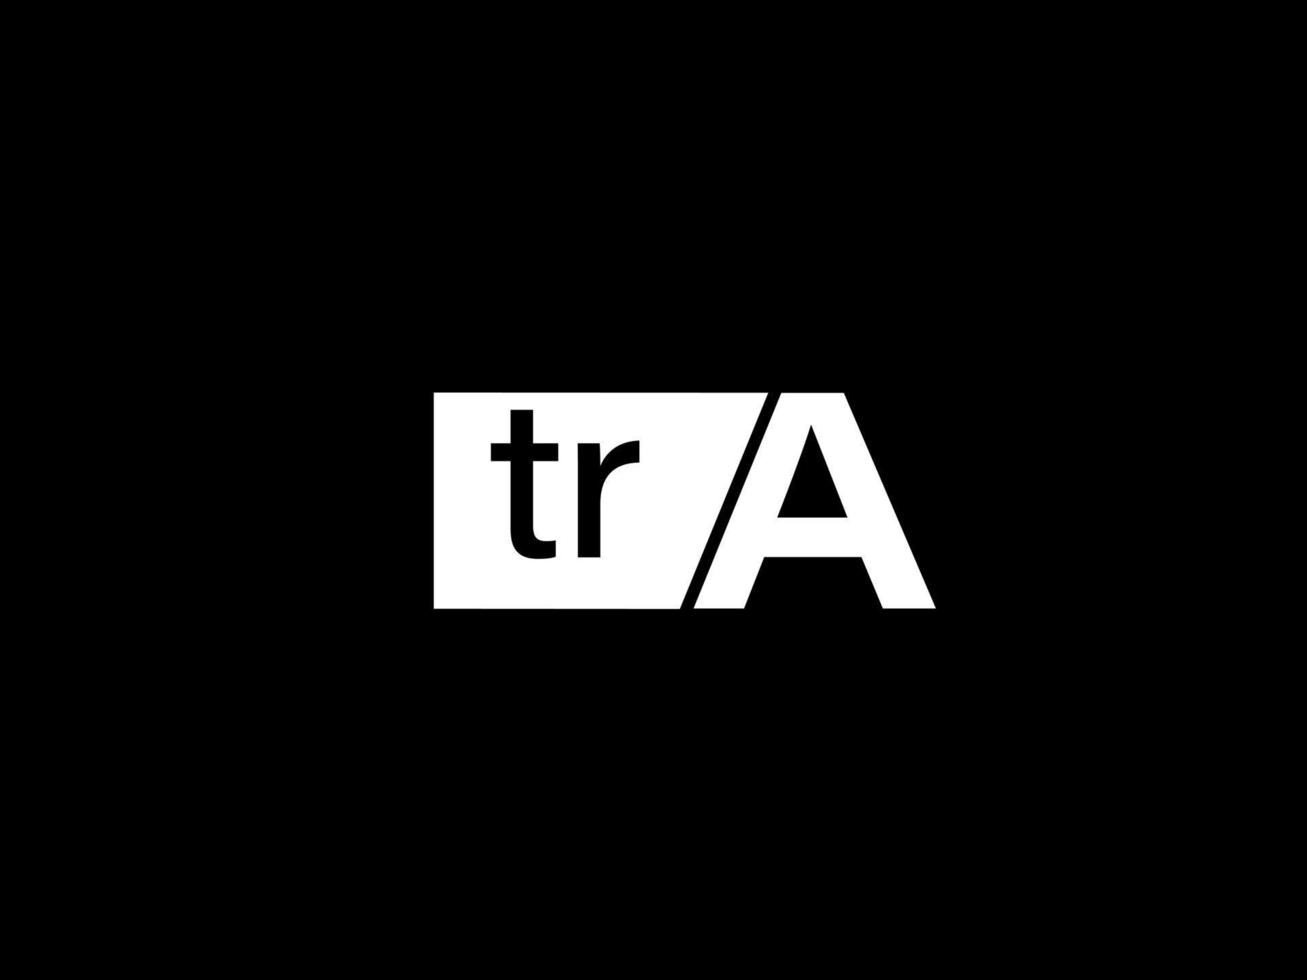 Tra Logo und Grafikdesign Vektorgrafiken, Symbole auf schwarzem Hintergrund isoliert vektor